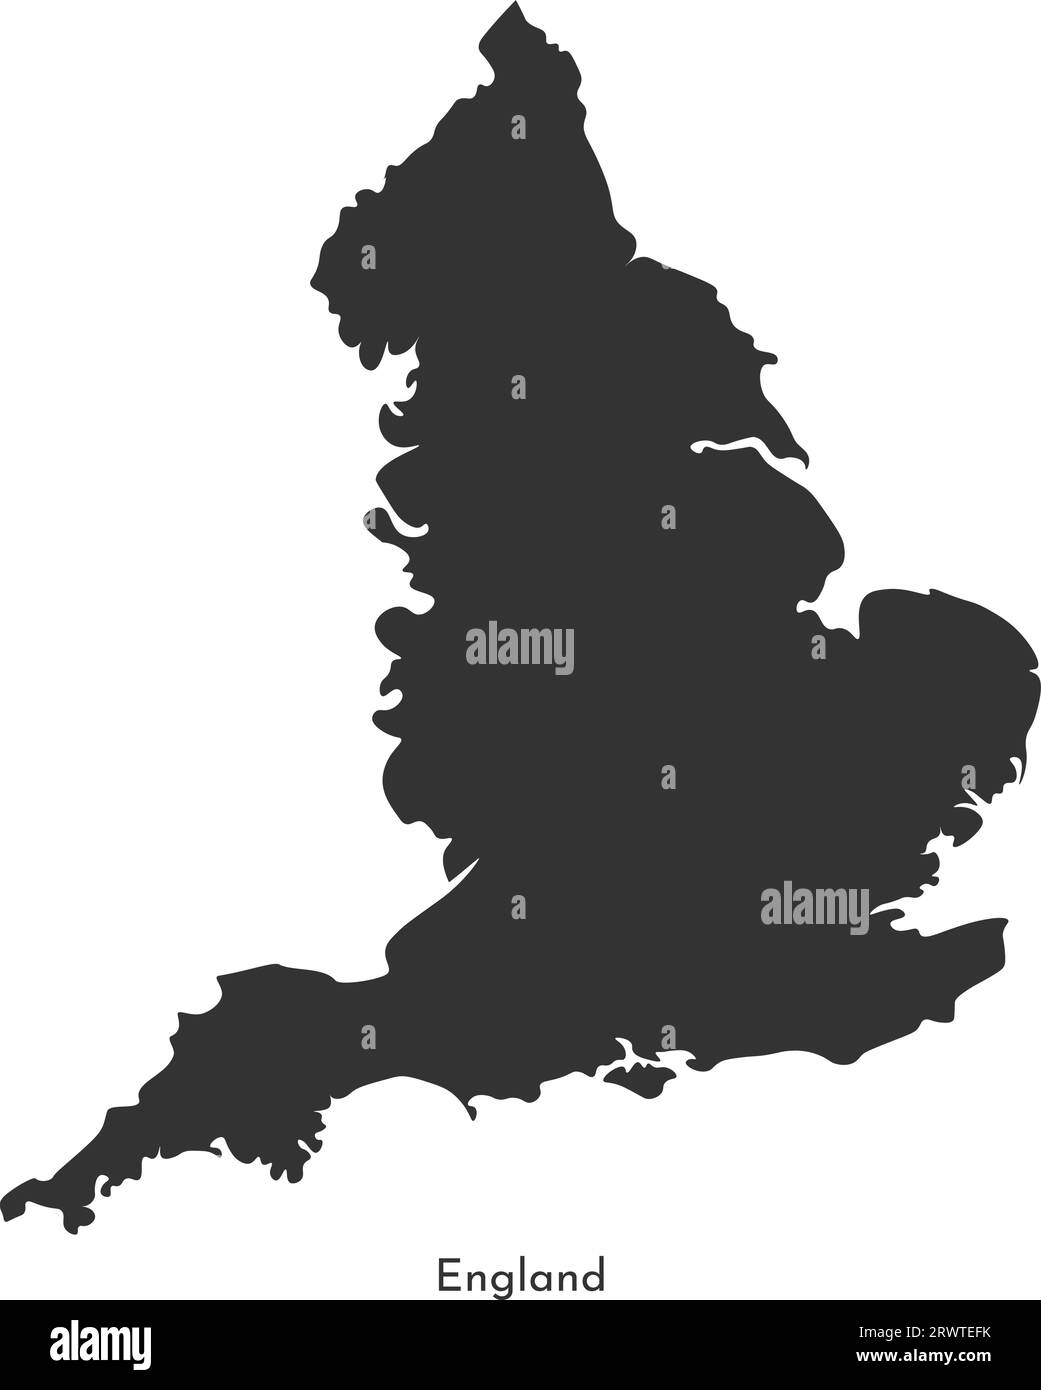 Vektor-isolierte vereinfachte Illustrationskarte. Graue Silhouette von England (Vereinigtes Königreich Großbritannien und Nordirland). Weißer Hintergrund Stock Vektor